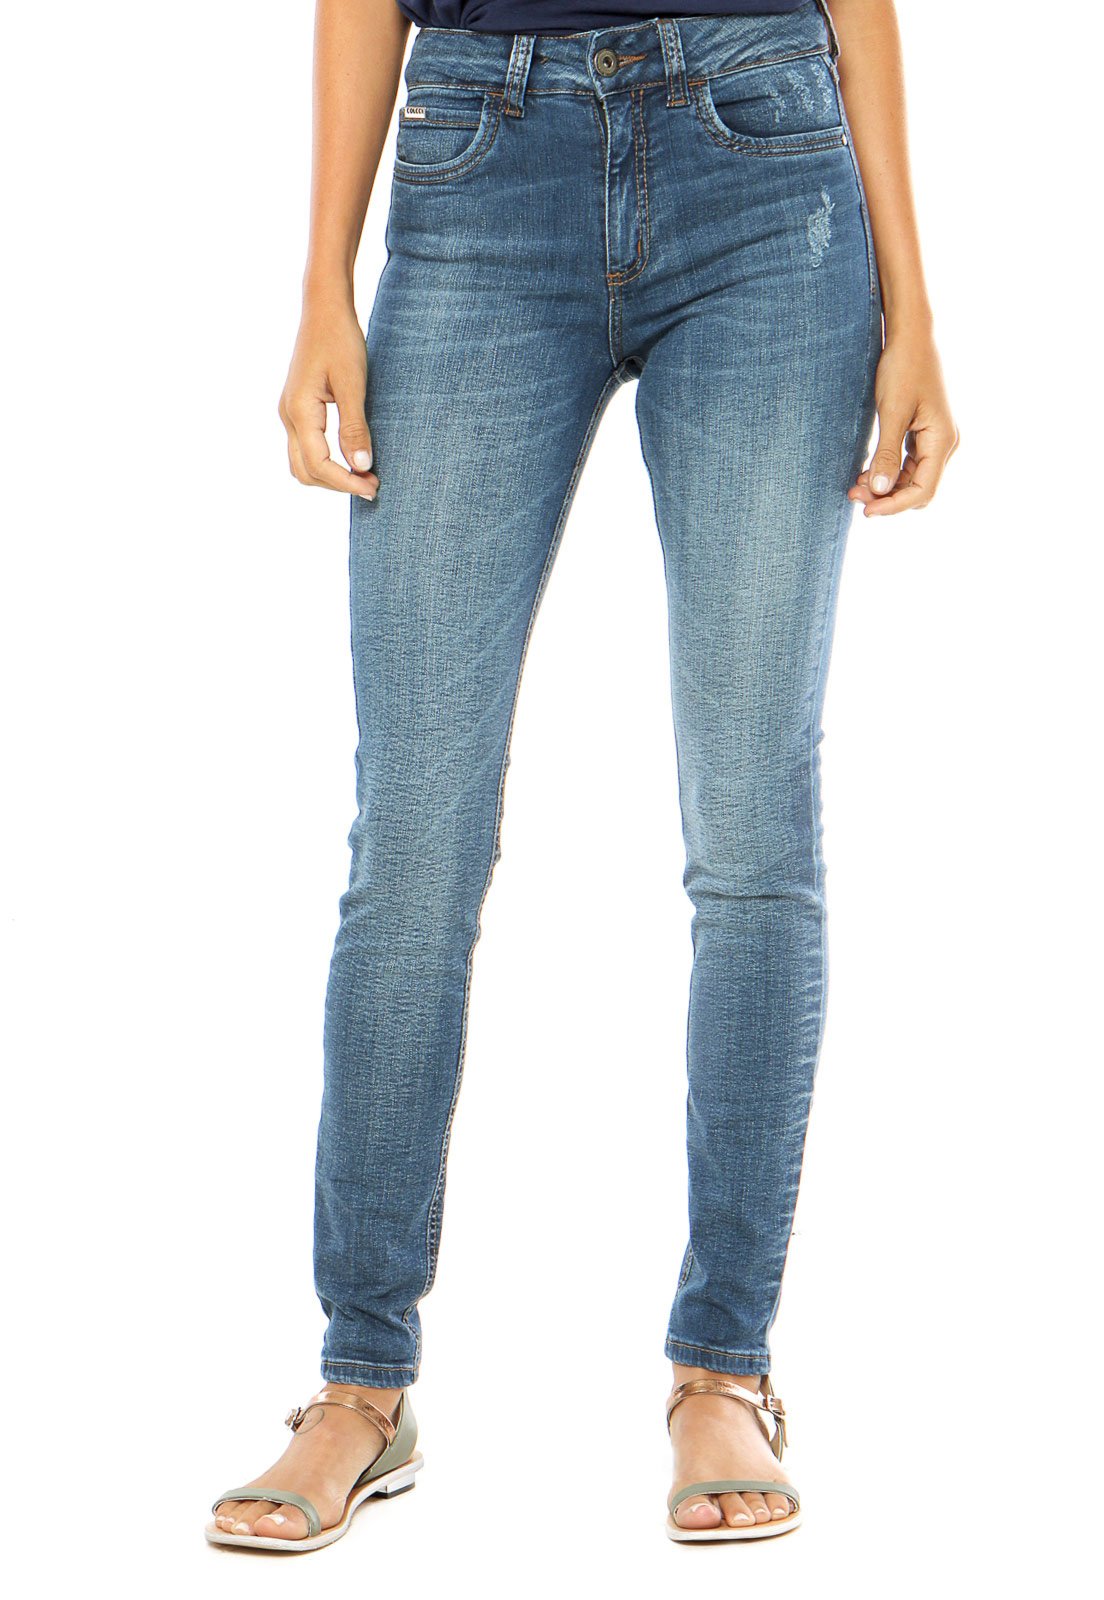 dafiti calça jeans feminina colcci